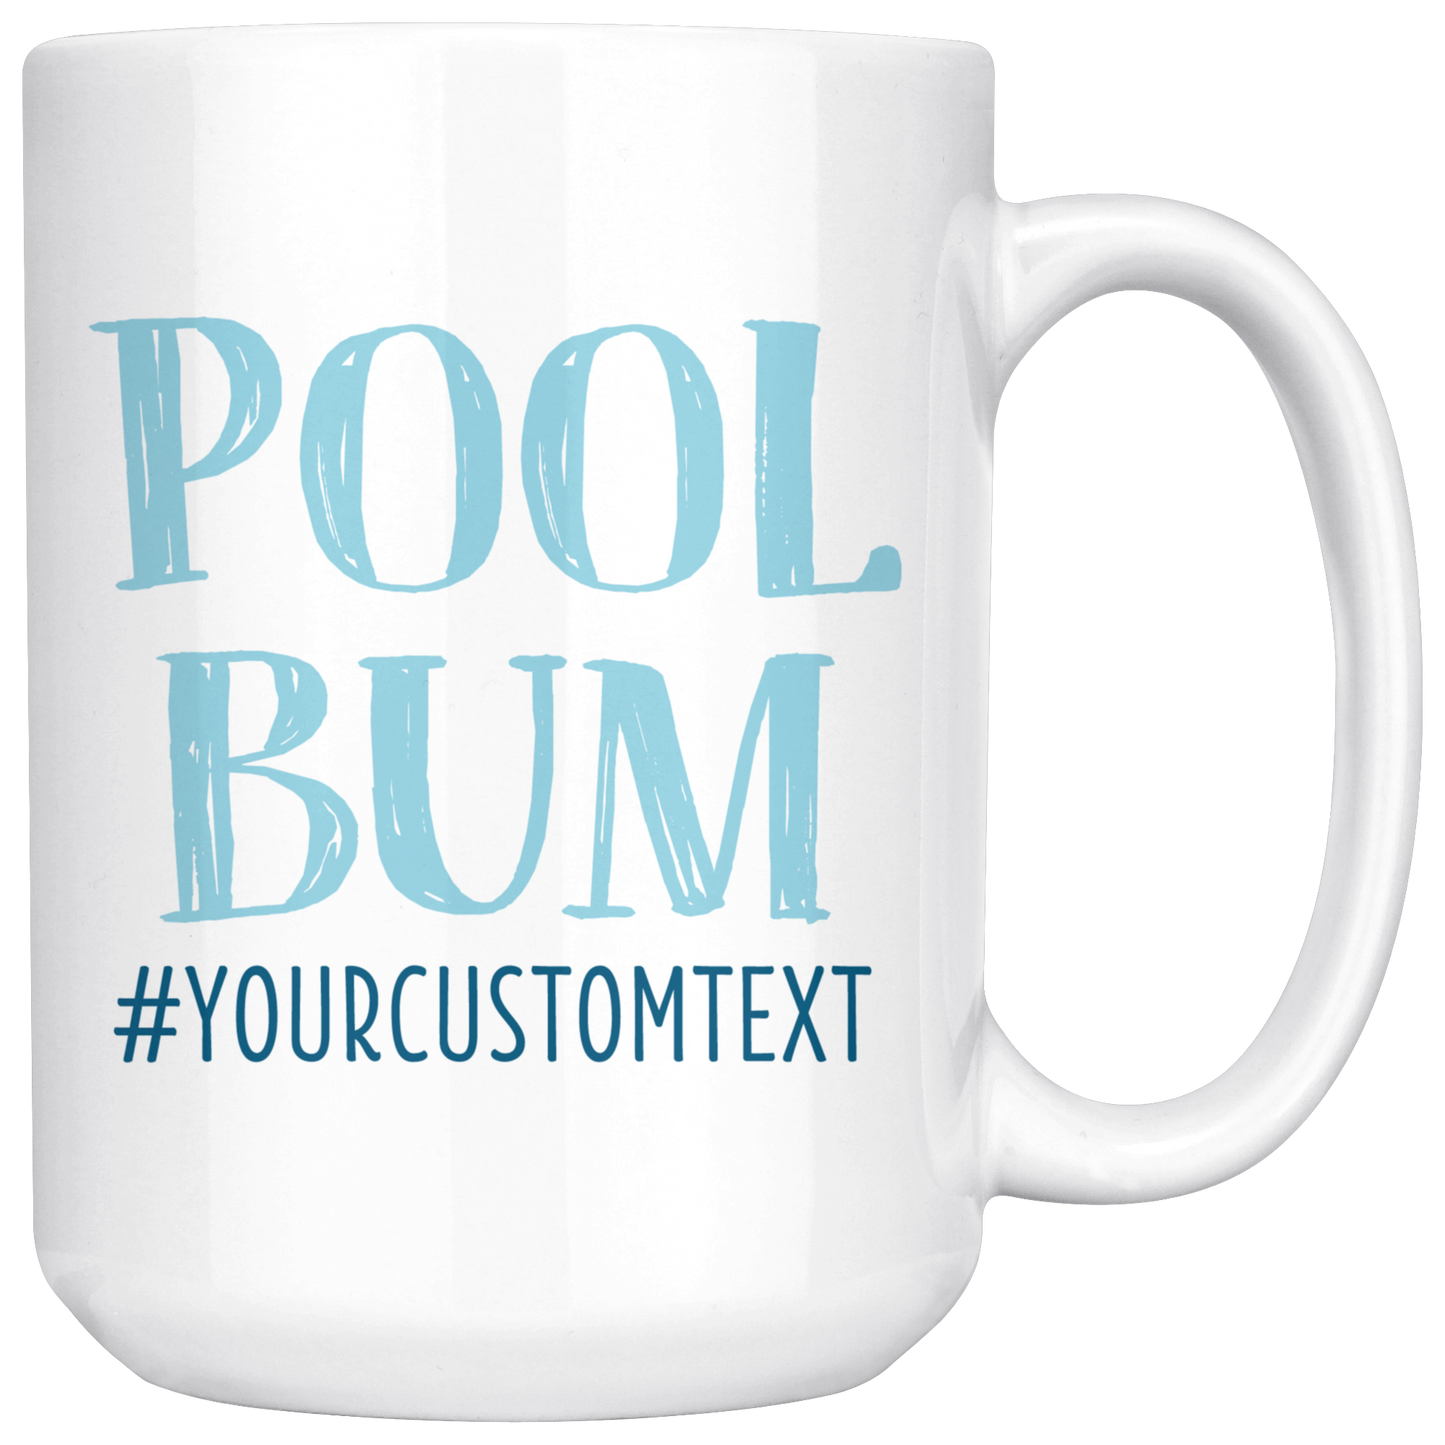 Pool Bum Custom Coffee Mug - 11oz or 15oz